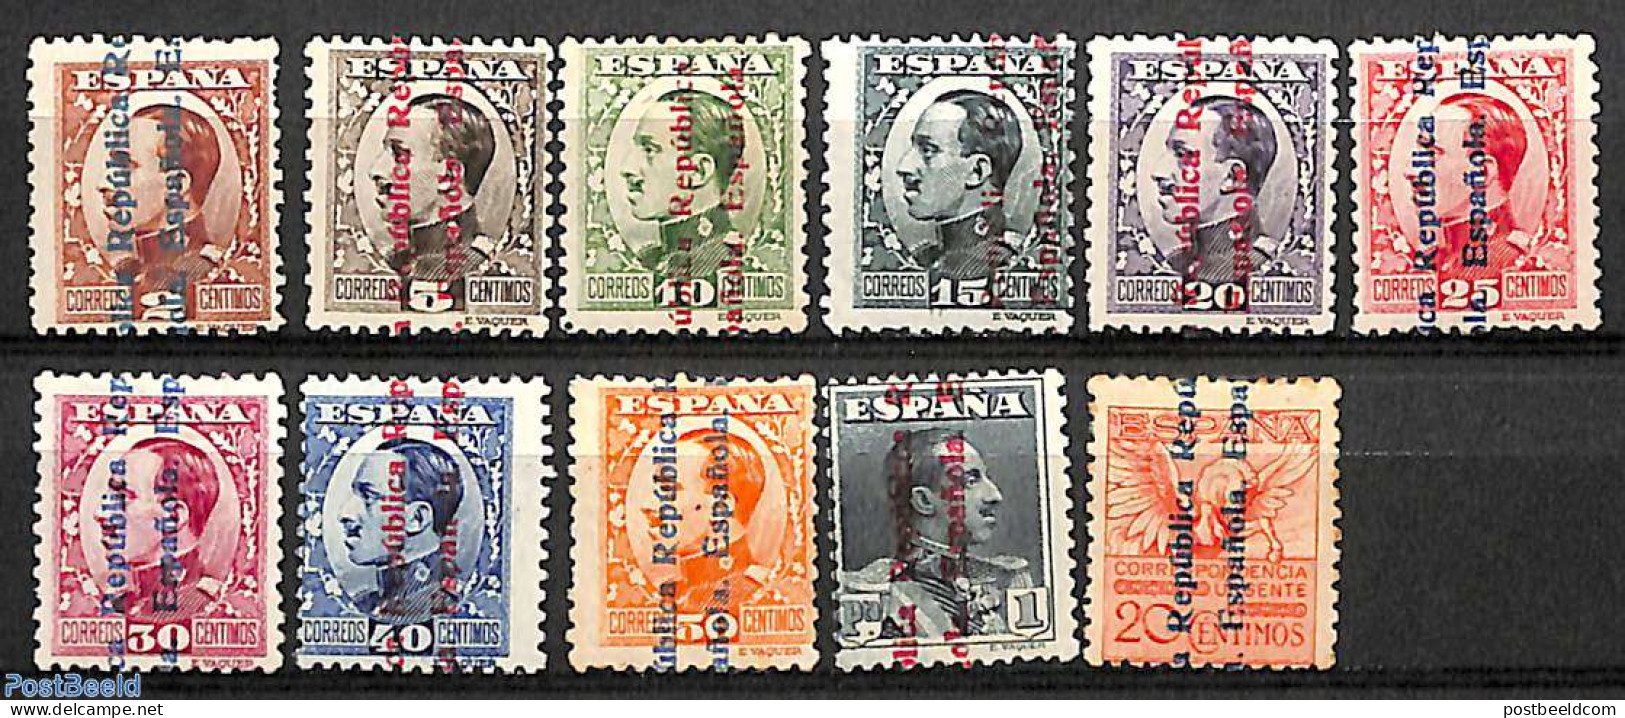 Spain 1931 Definitives Overprints 11v, Unused (hinged) - Nuevos